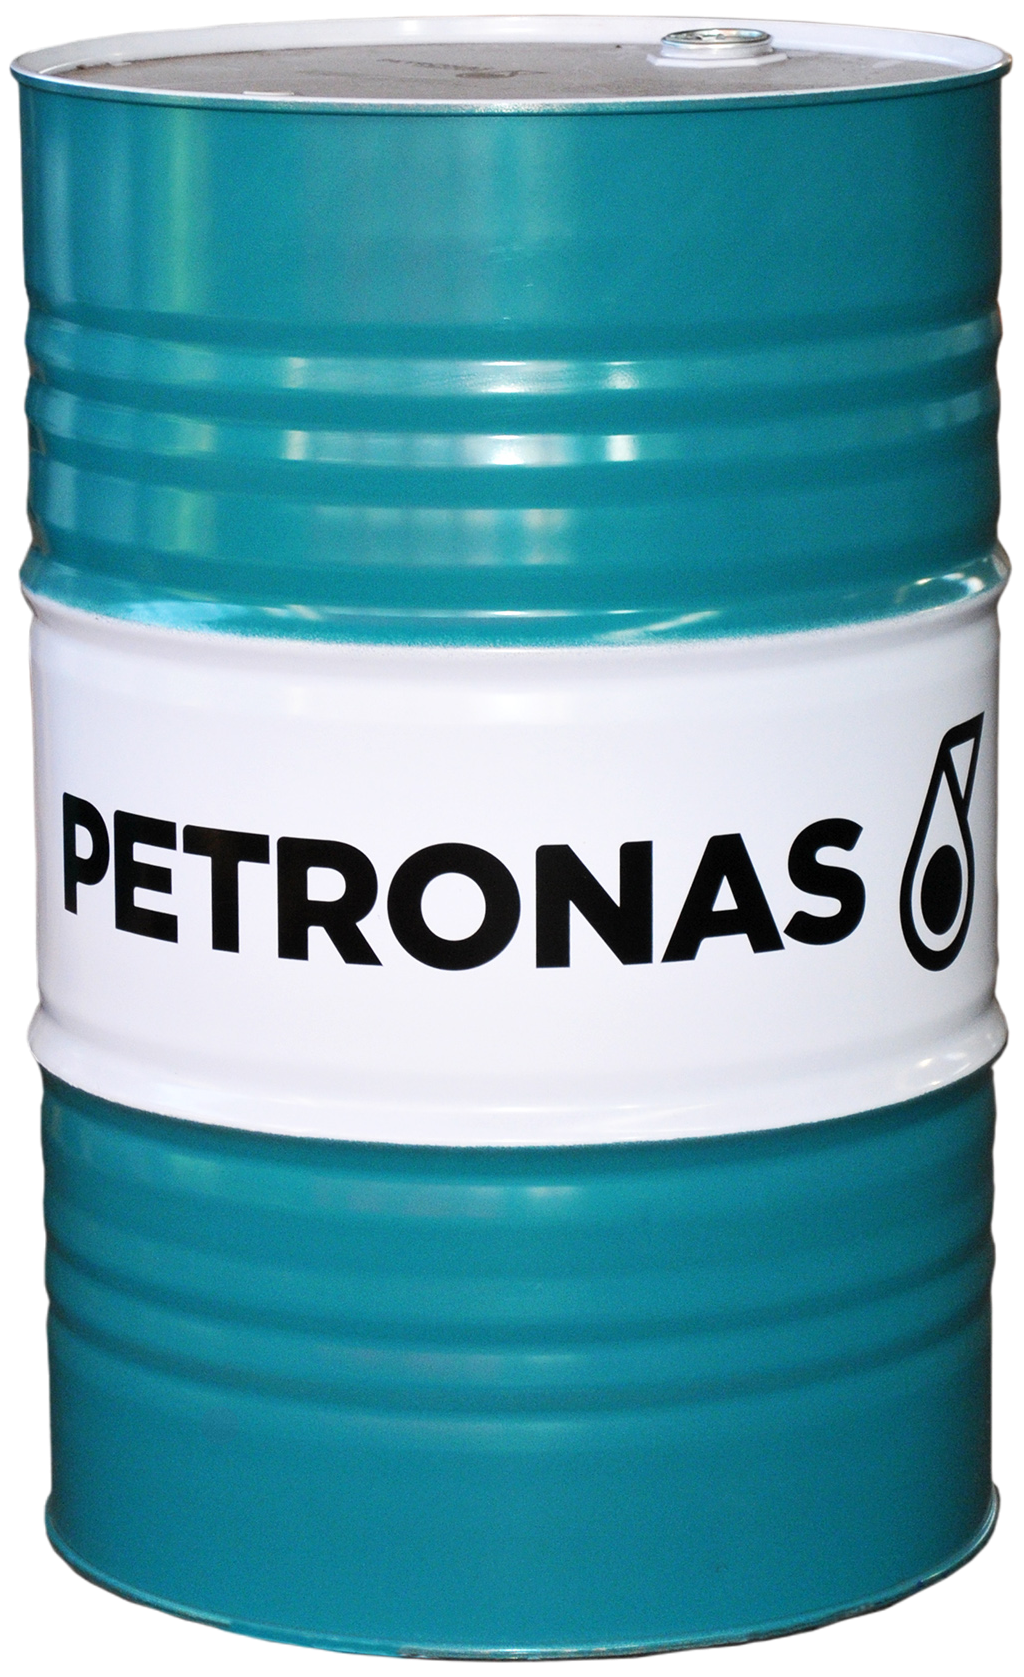 Petronas Hydraulic 10, 208 lt